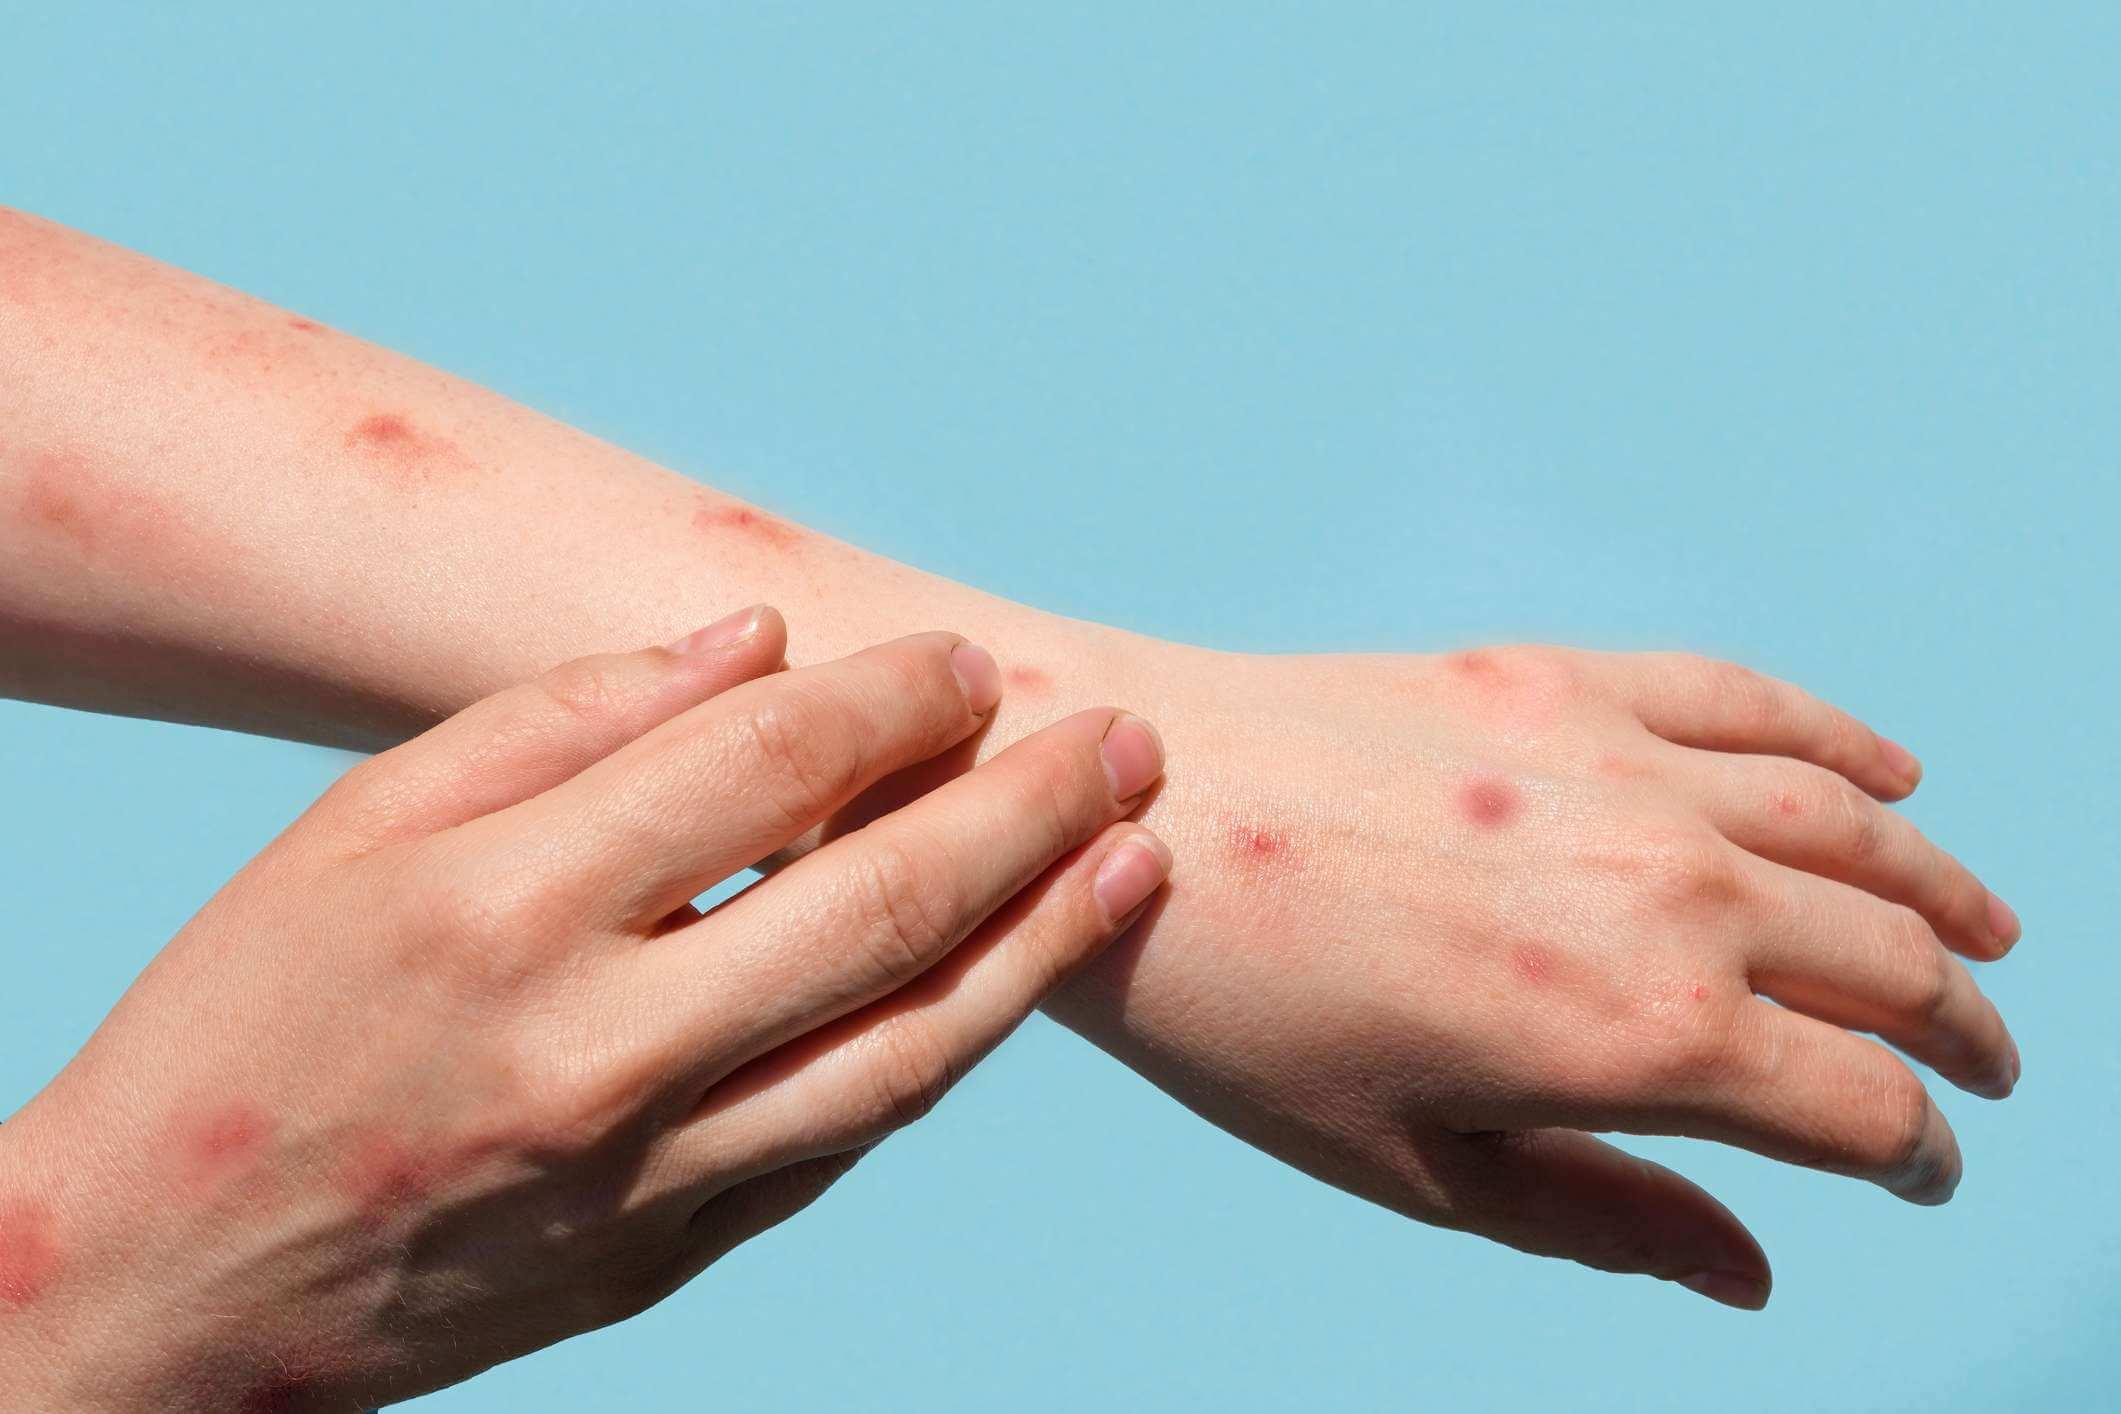 Monkeypox neue Krankheit gefährlich auf der ganzen Welt. Patient mit Affenpocken. Schmerzhafter Ausschlag, rote Flecken, Blasen an der Hand. Nahaufnahme Hautausschlag, menschliche Hände mit Gesundheitsproblem. Banner, Kopierbereich.